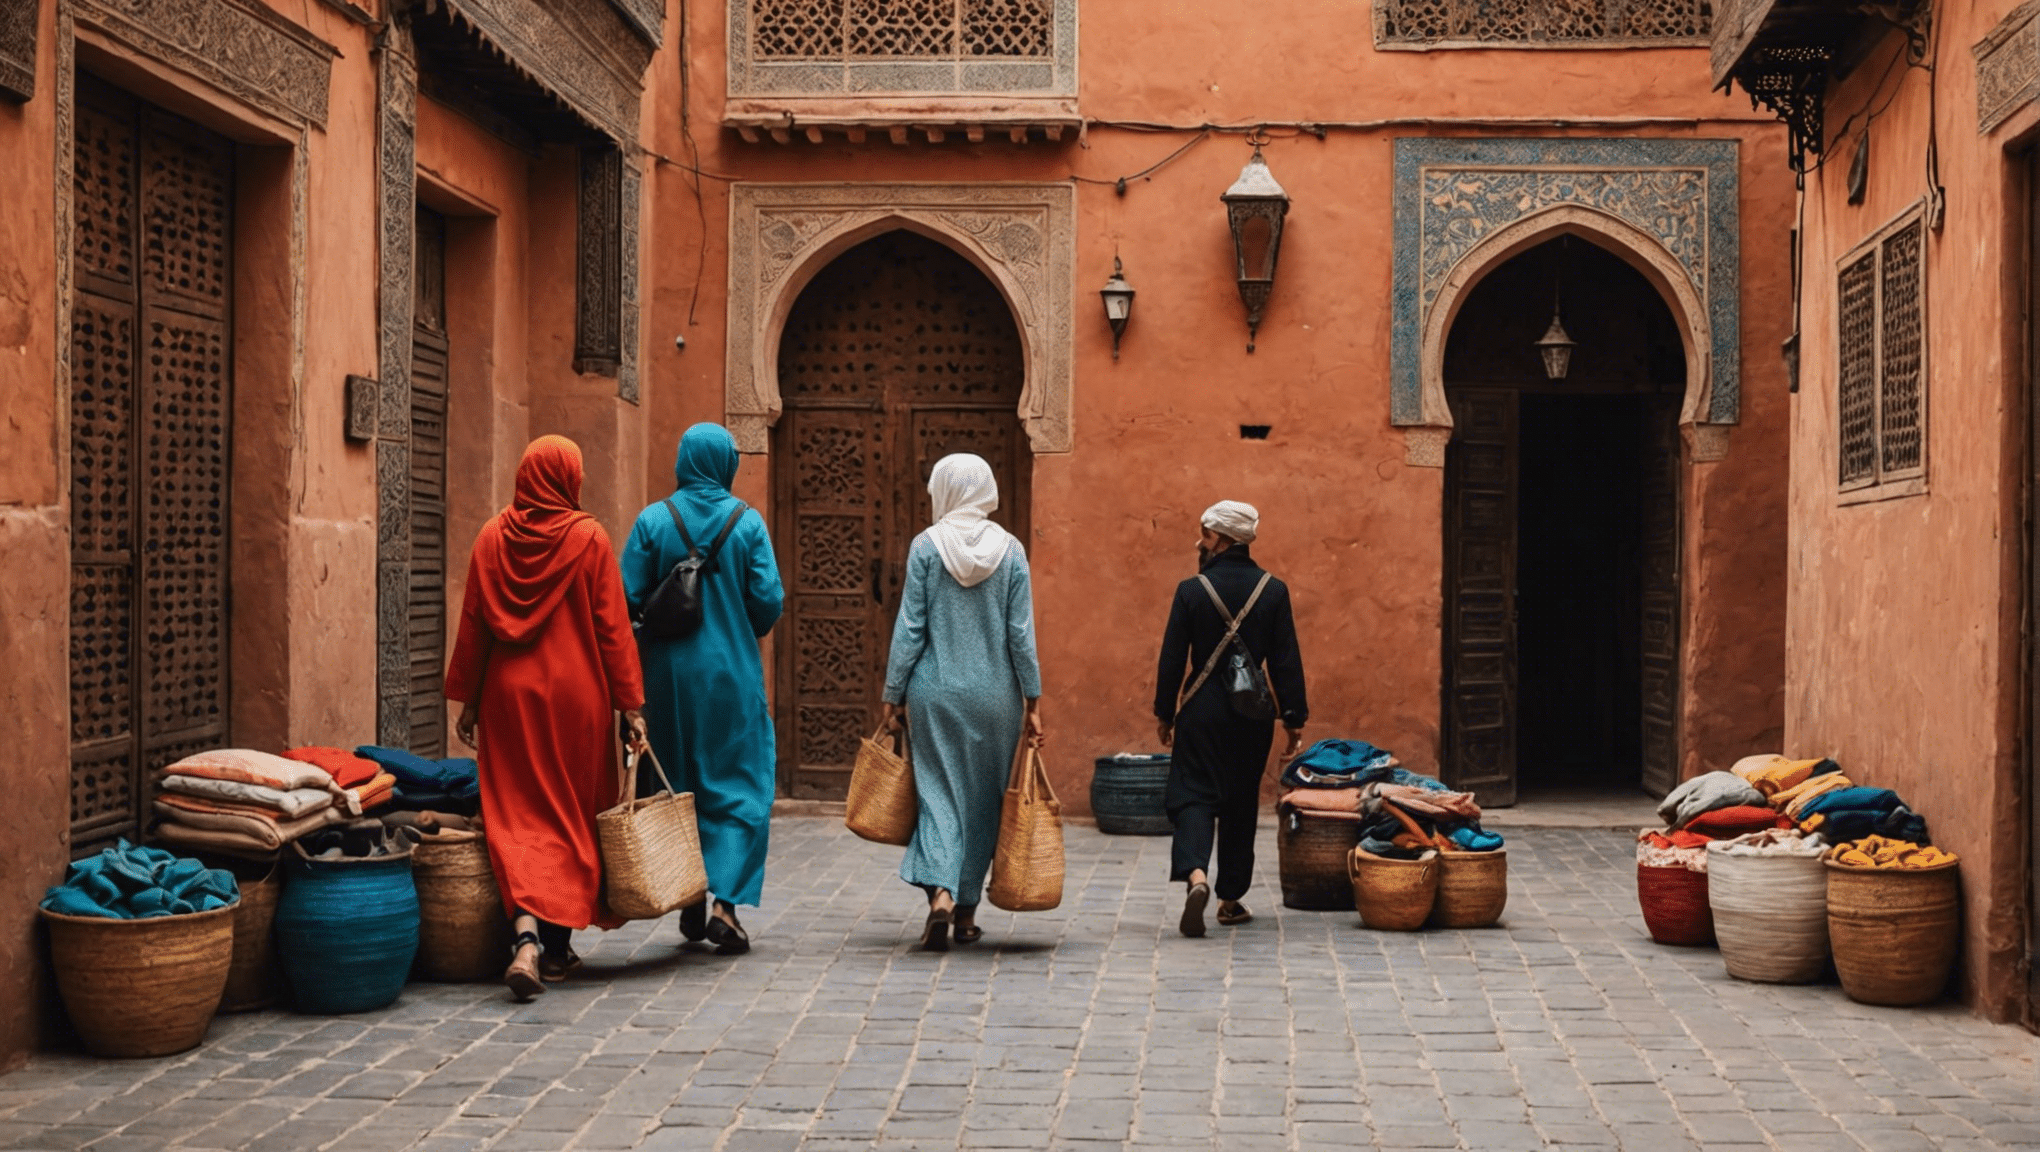 ¡Descubra consejos esenciales para empacar para una aventura inolvidable en abril en Marrakech! desde ropa ligera hasta accesorios imprescindibles, aprovecha al máximo tu viaje con nuestra guía experta en embalaje.